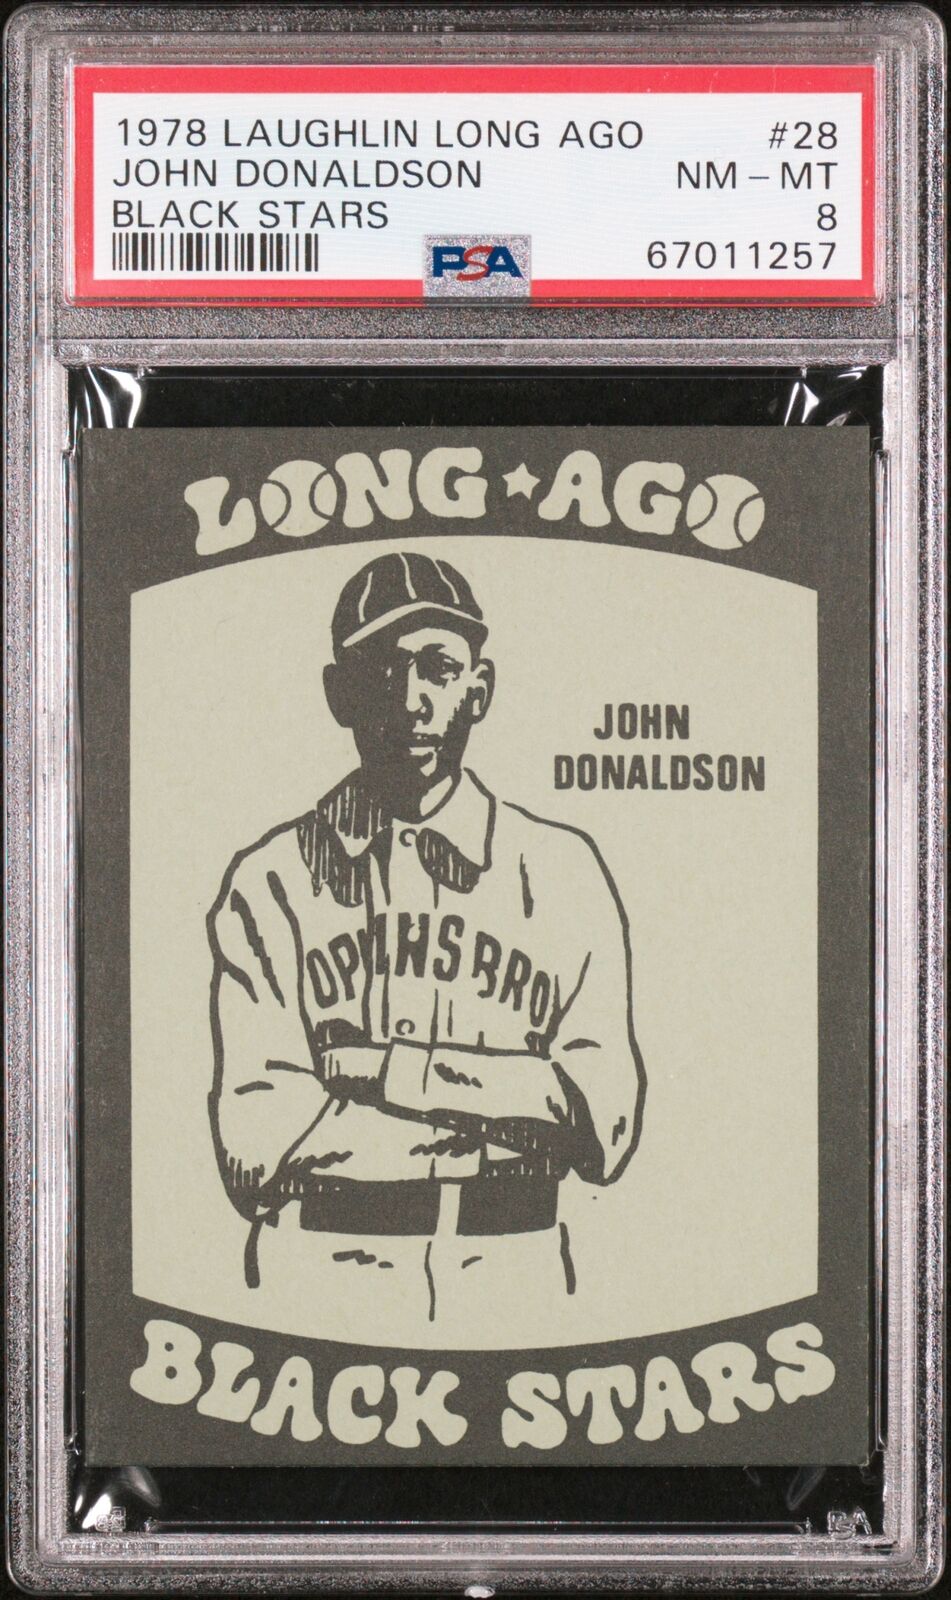 1978 Laughlin Long Ago Black Stars John Donaldson #28 PSA 8